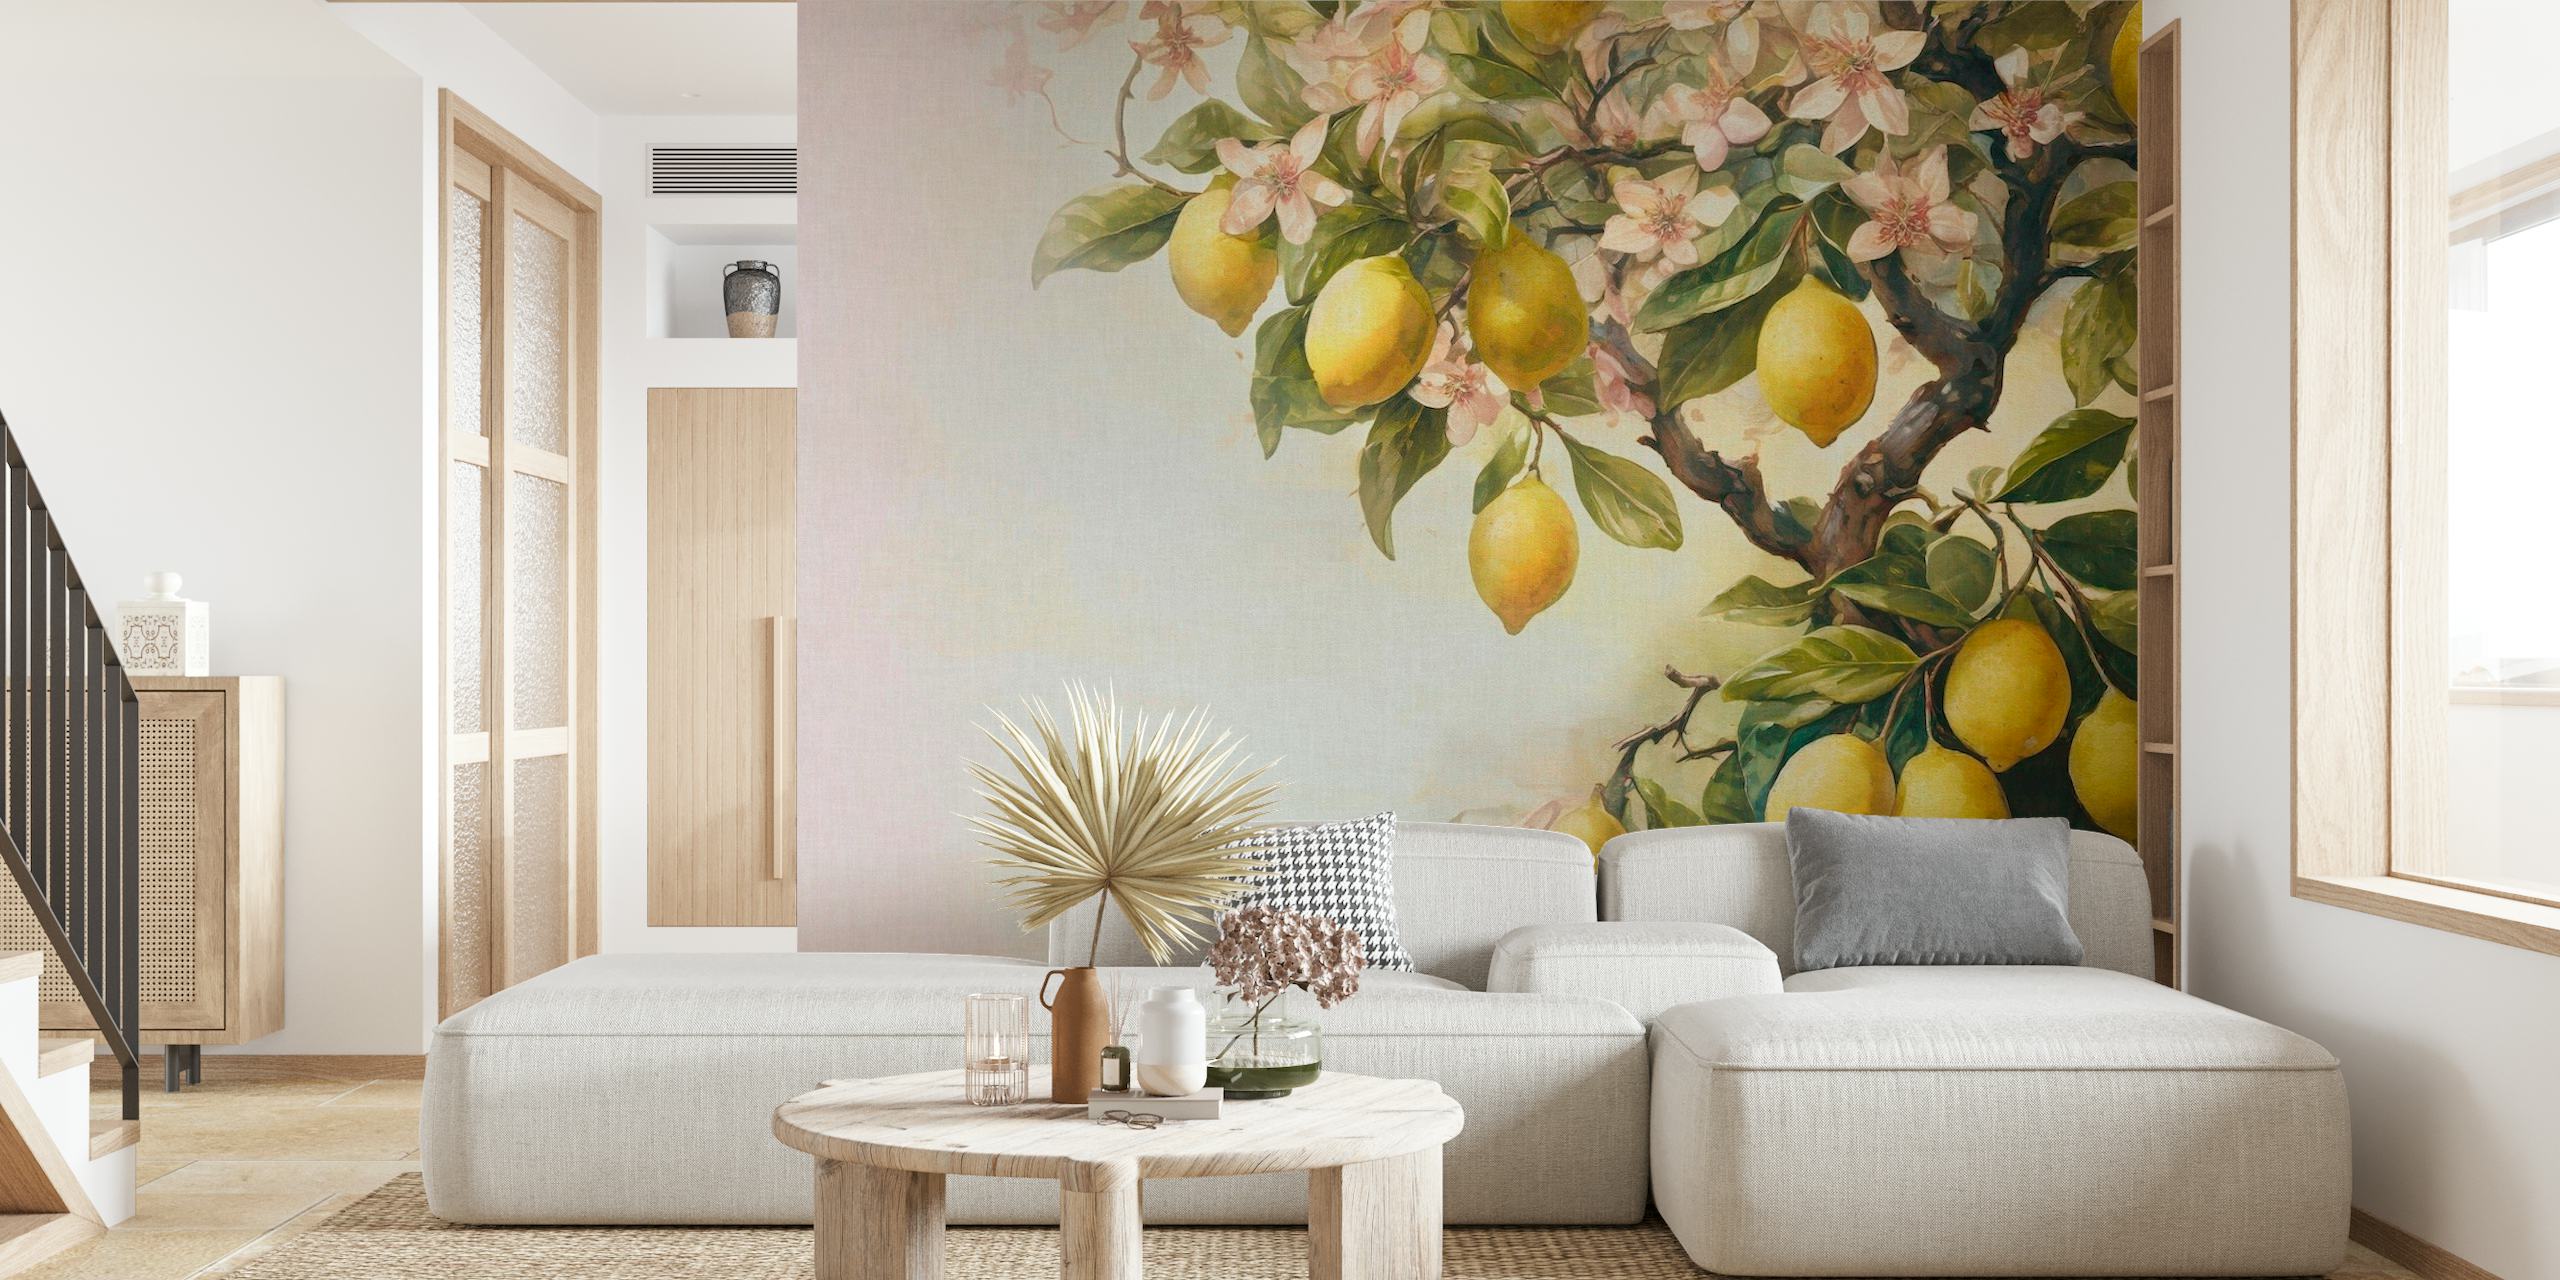 Fototapeta citronovníku se zralými citrony a květy v jemných vintage tónech